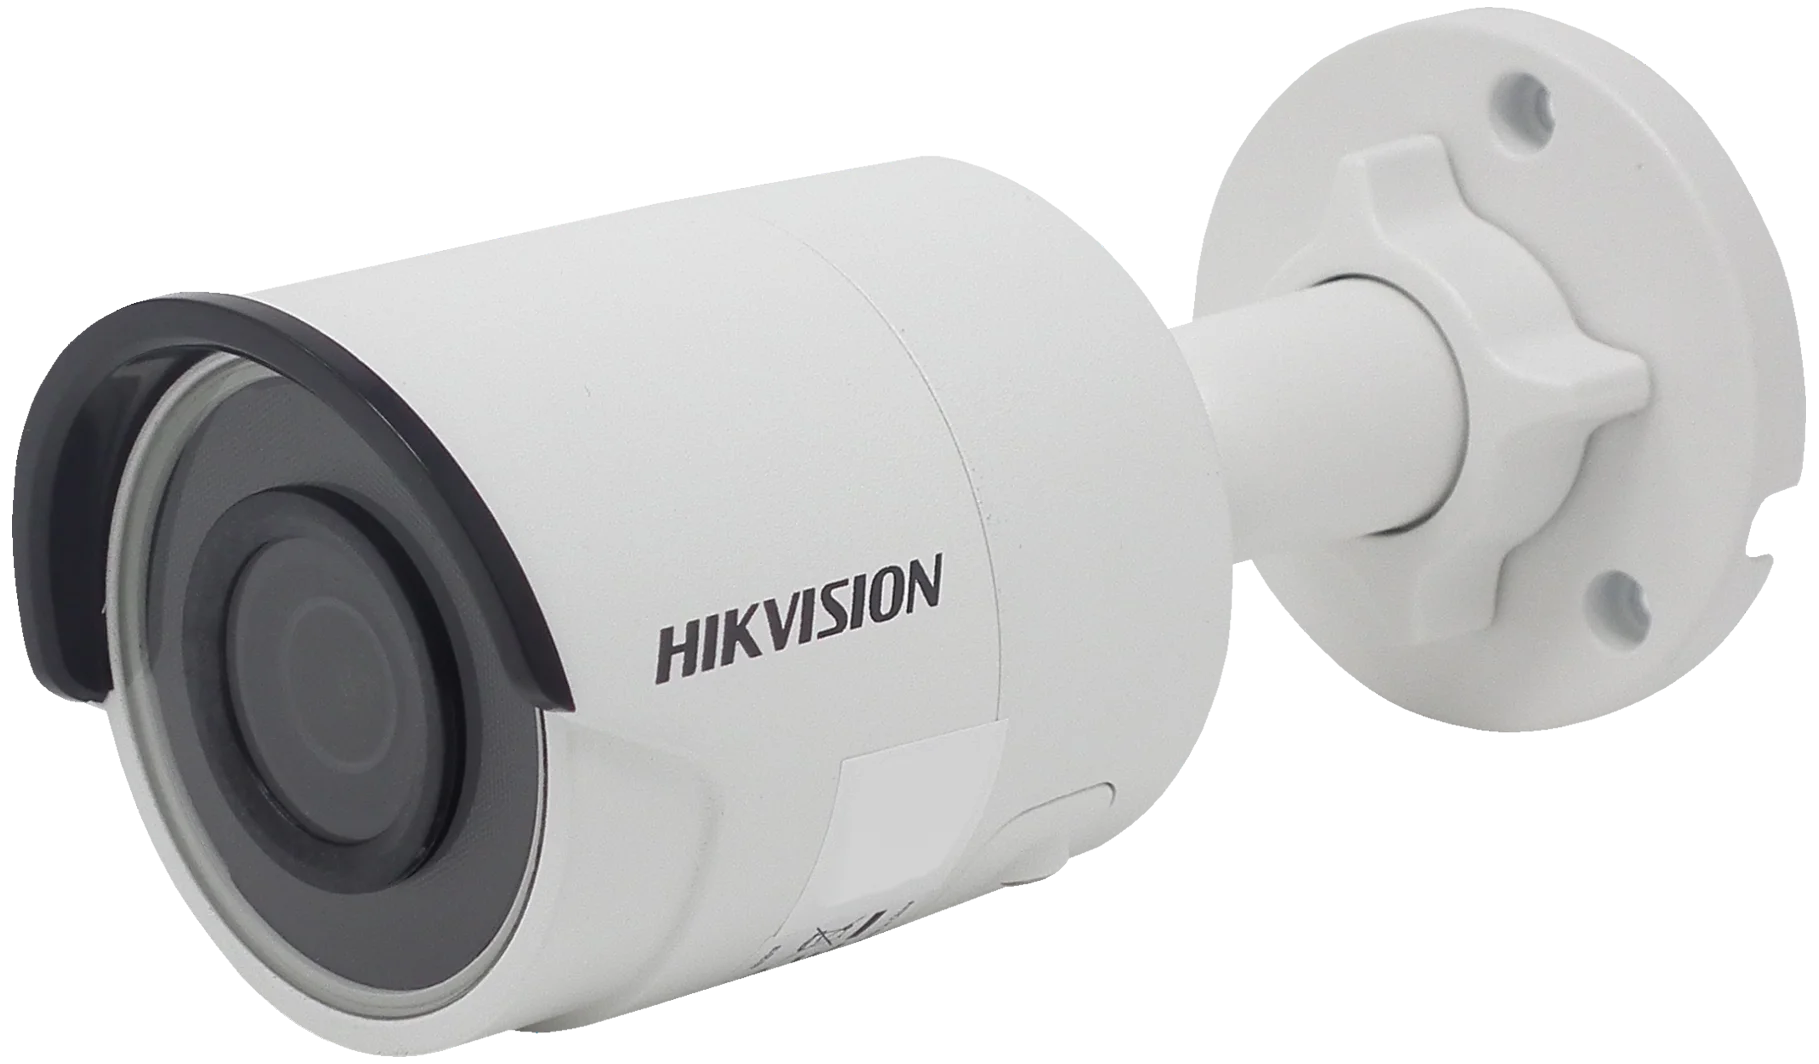 Ip mp4. Hikvision DS-2cd2023g0-i. Hikvision DS-2cd2023g0-i 8мм. Hikvision DS-2cd2043g0-i. Видеокамера уличная Hikvision DS 2cd2023g0 i.